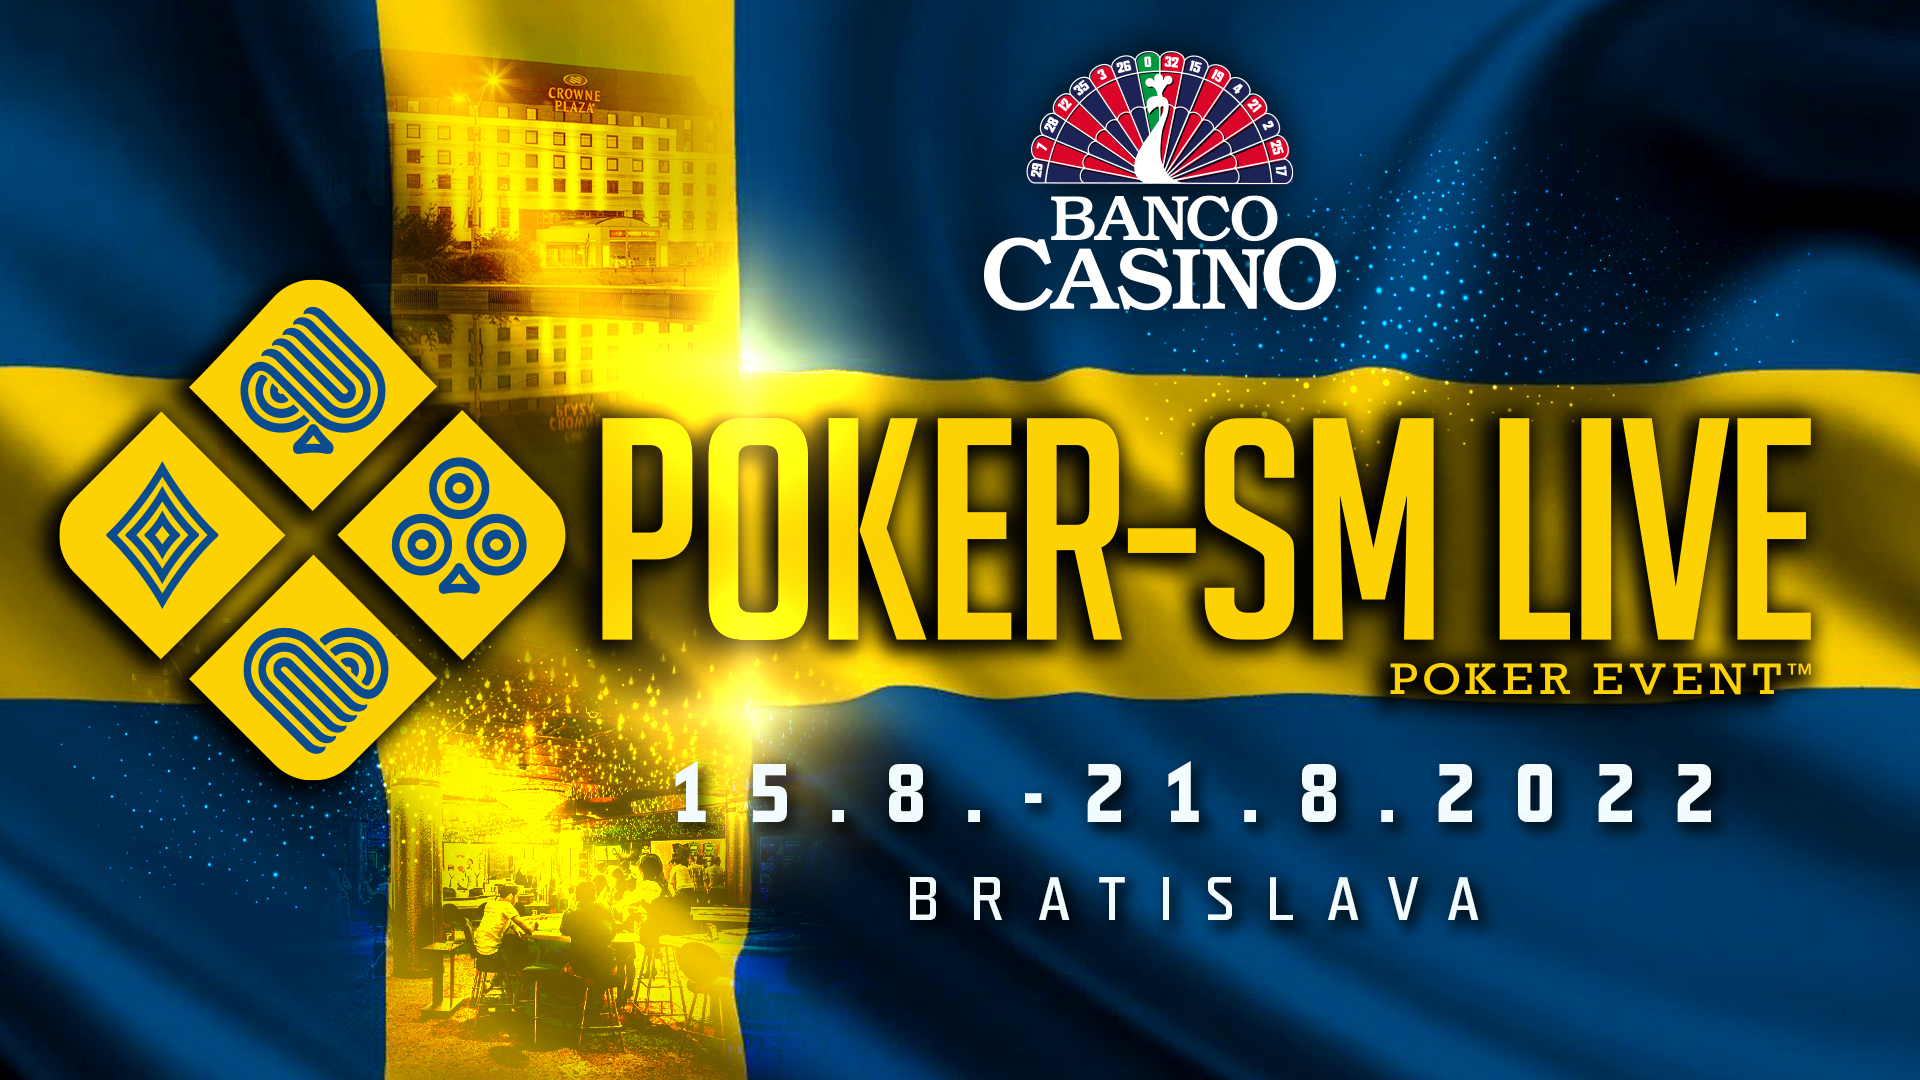 Švédske pokrové majstrovstvá prinesie Banco Casino už v strede augusta!